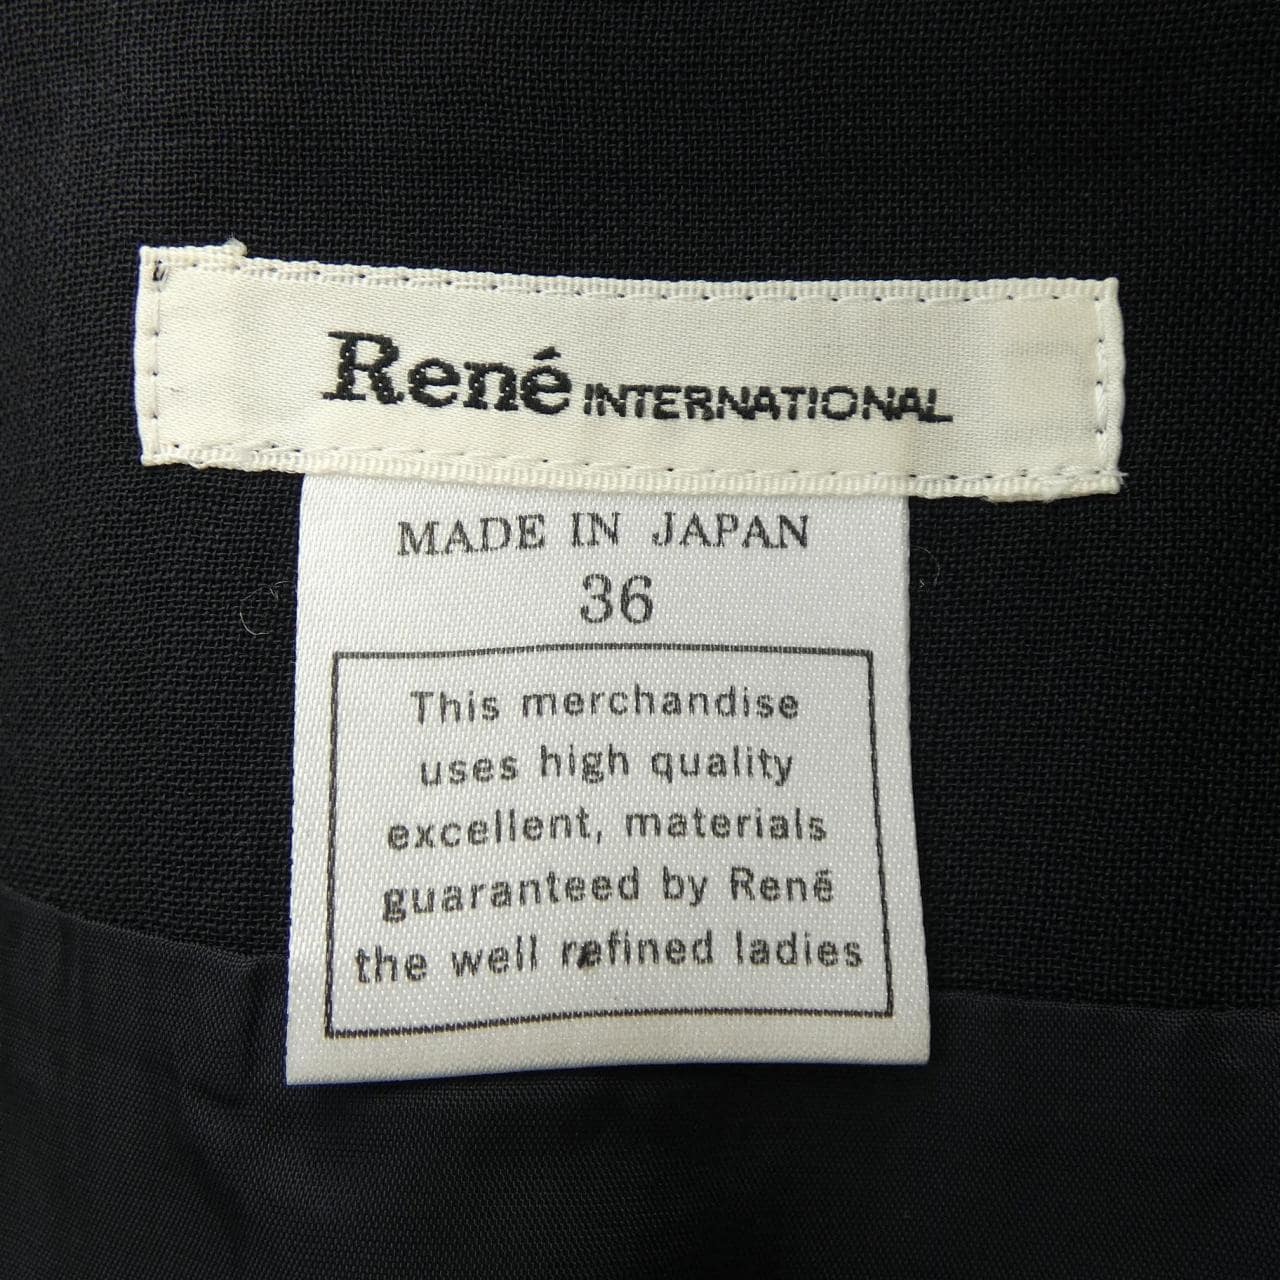 Rene RENE skirt